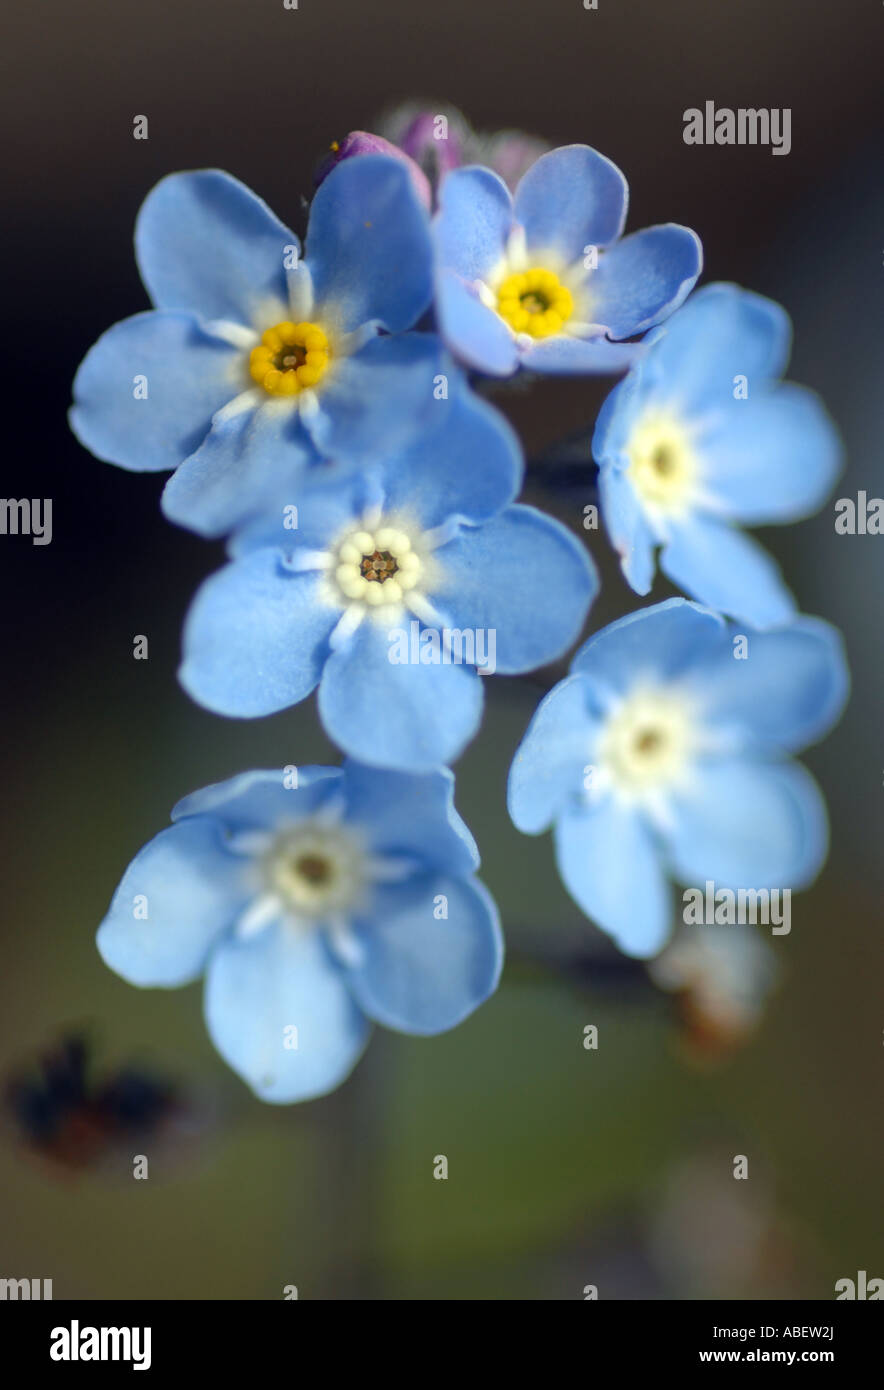 Vergessen Sie mich nicht Blumen, Boraginaceae, Borretsch, Vergißmeinnicht  Blume Stockfotografie - Alamy